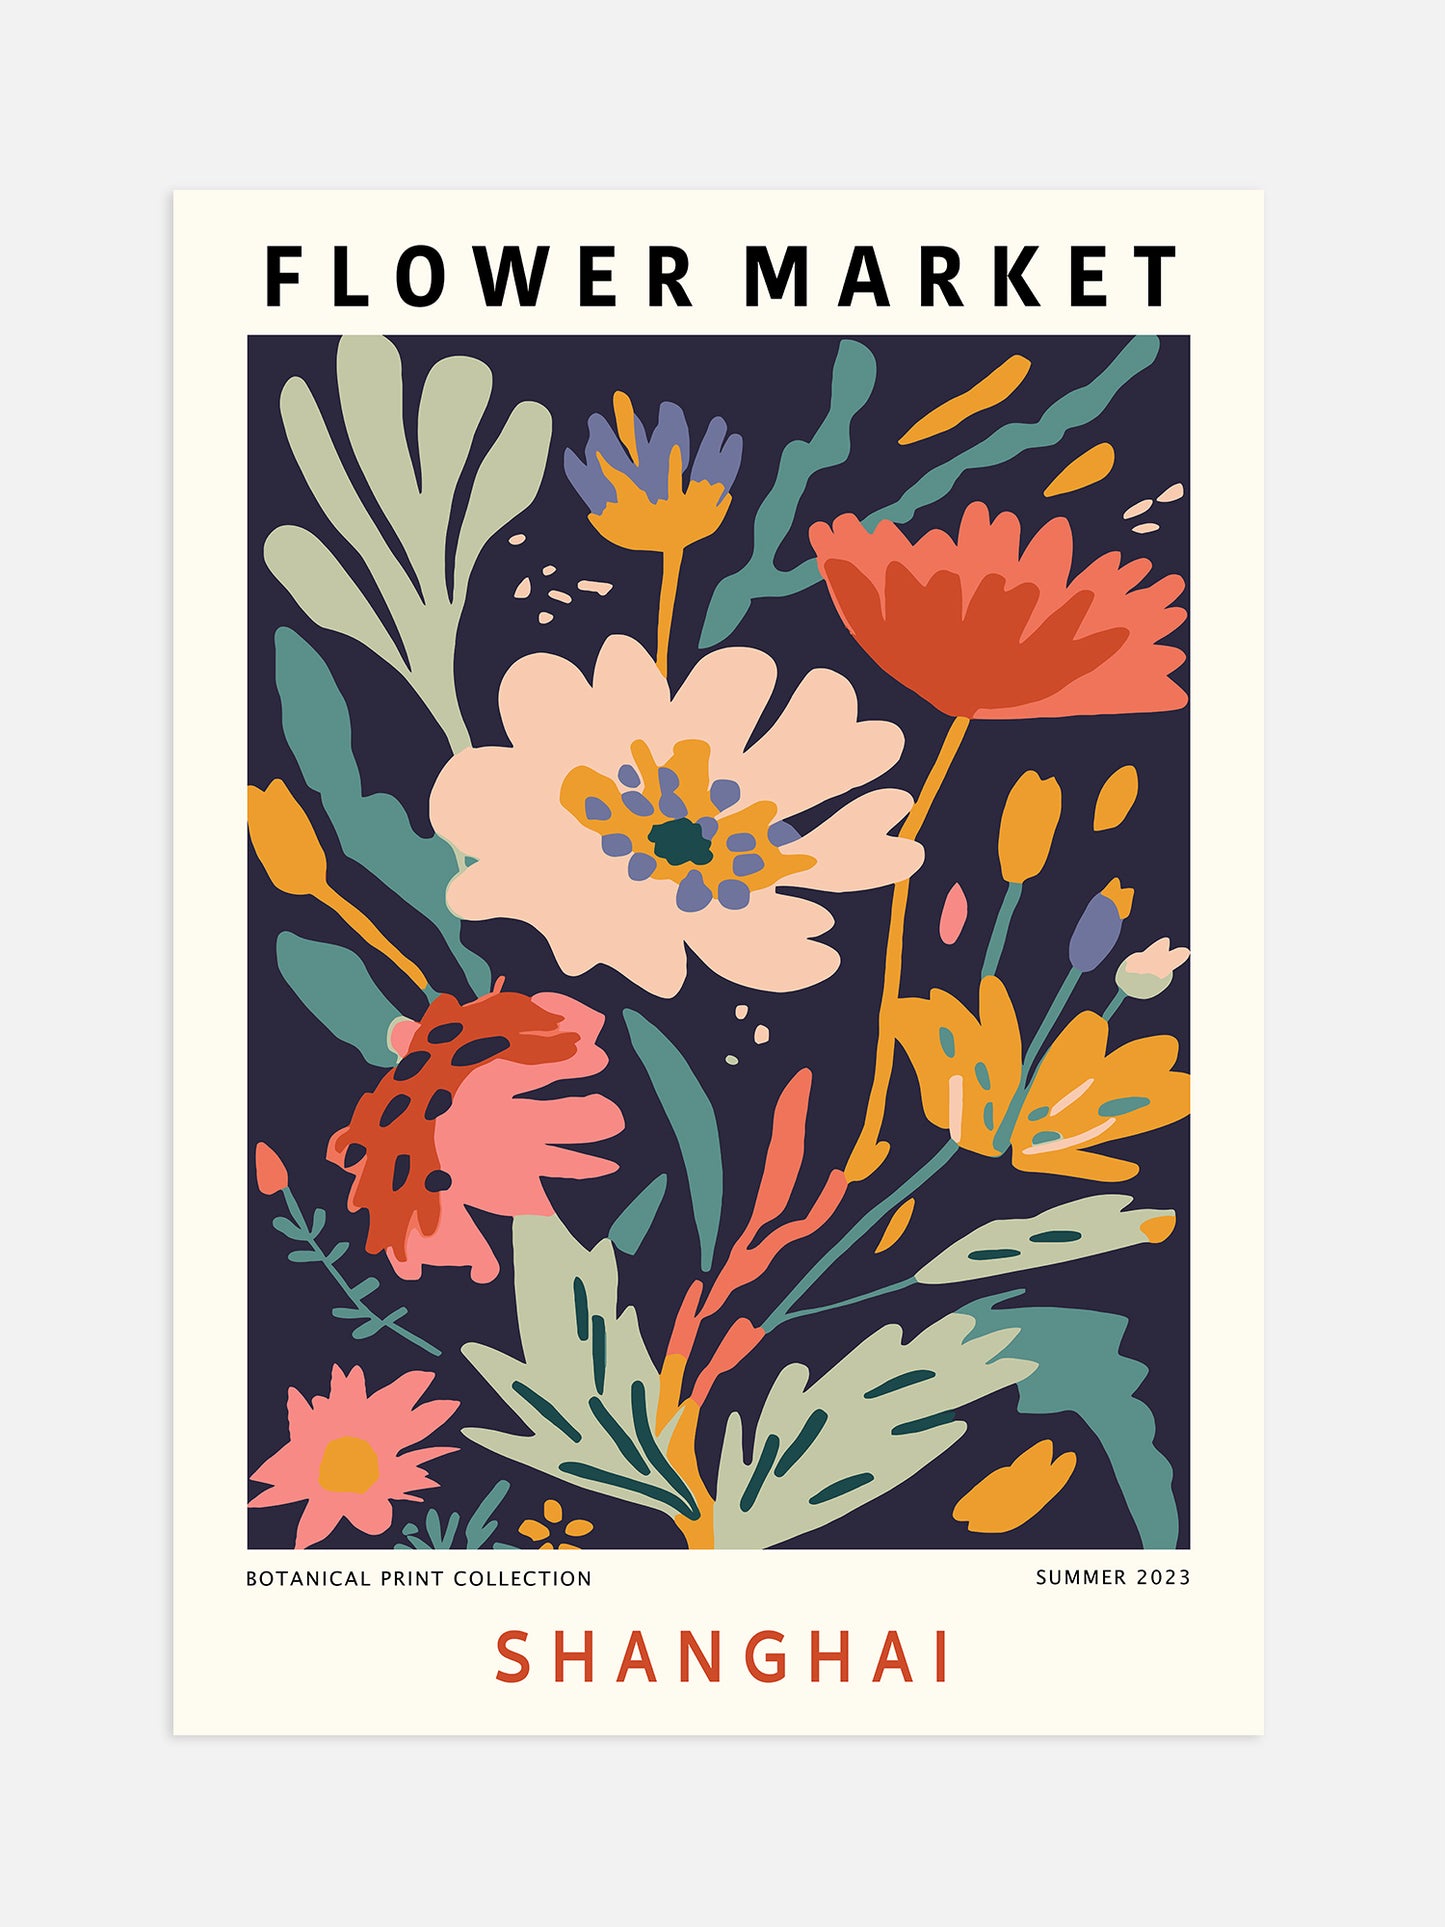 Shanghai Flower Market